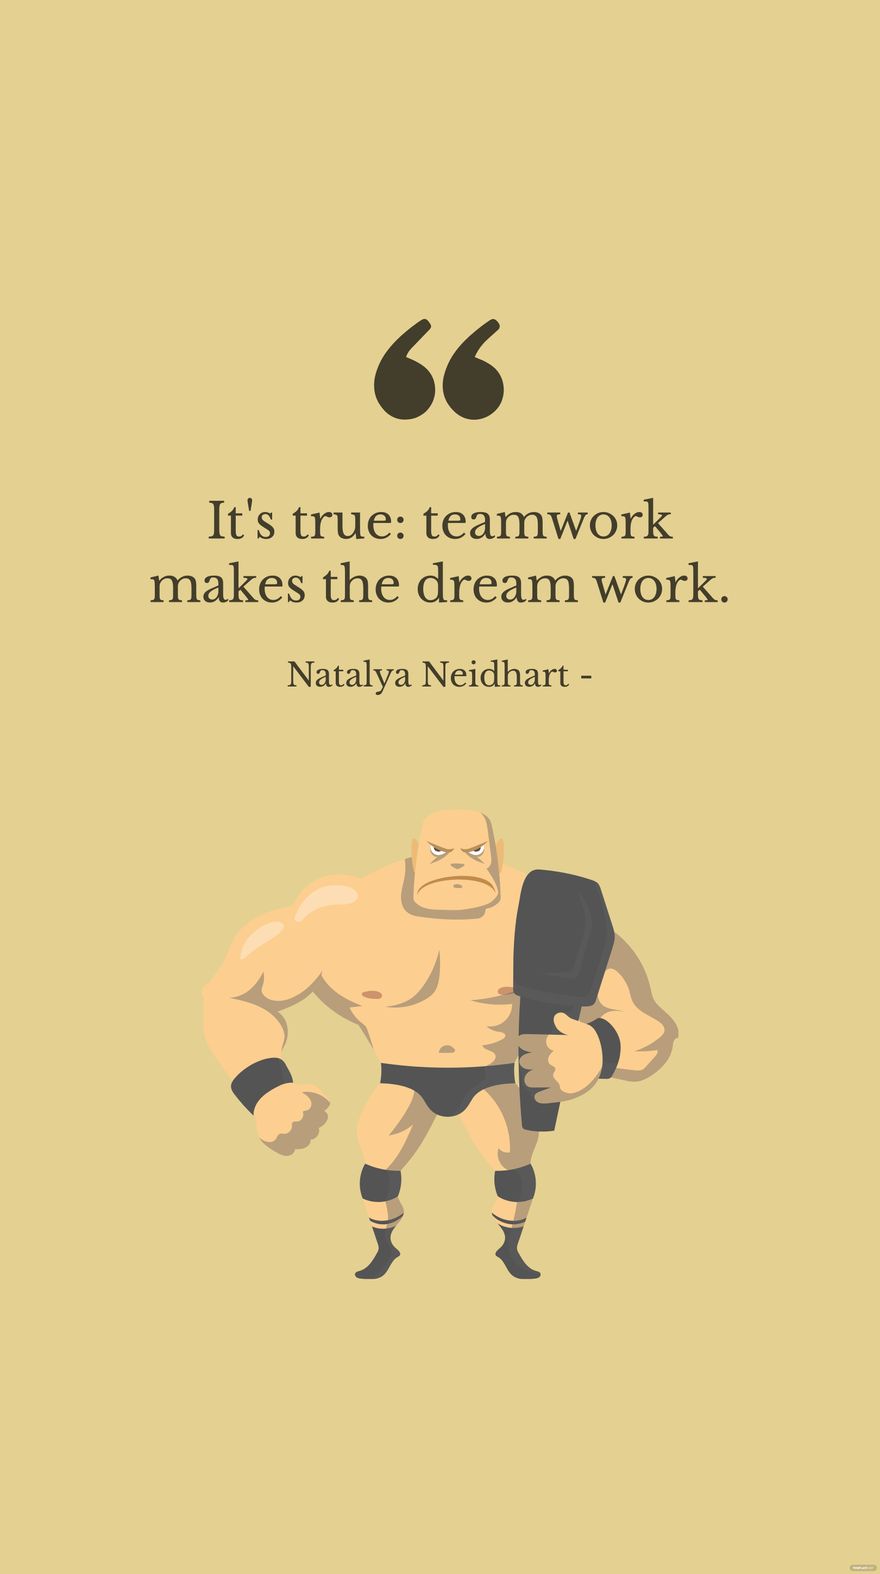 Natalya Neidhart - It's true: teamwork makes the dream work. in JPG